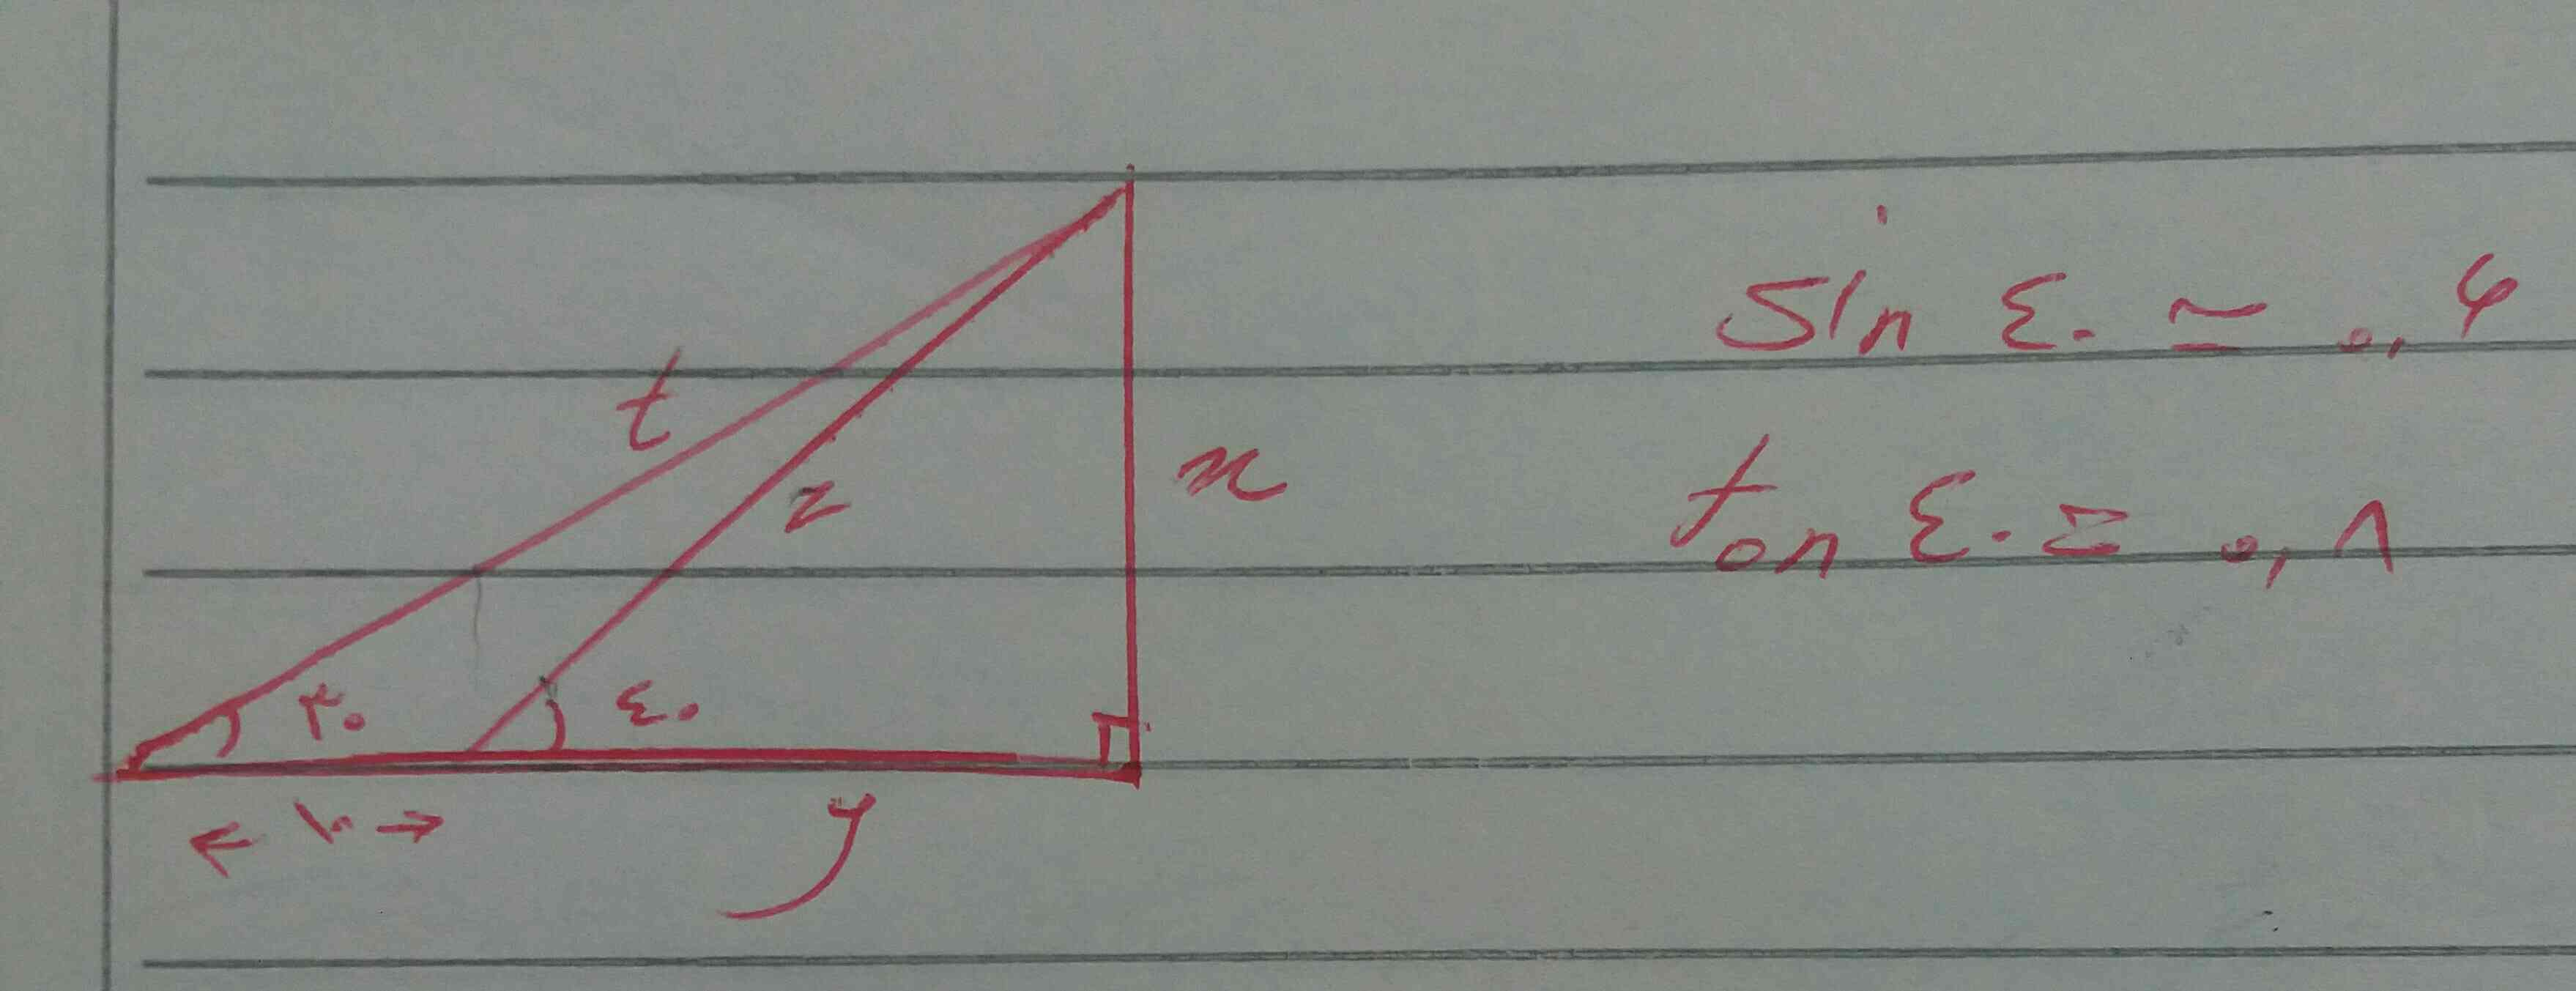 اندازه مقادیر x و z و t و y را به دست اورید.